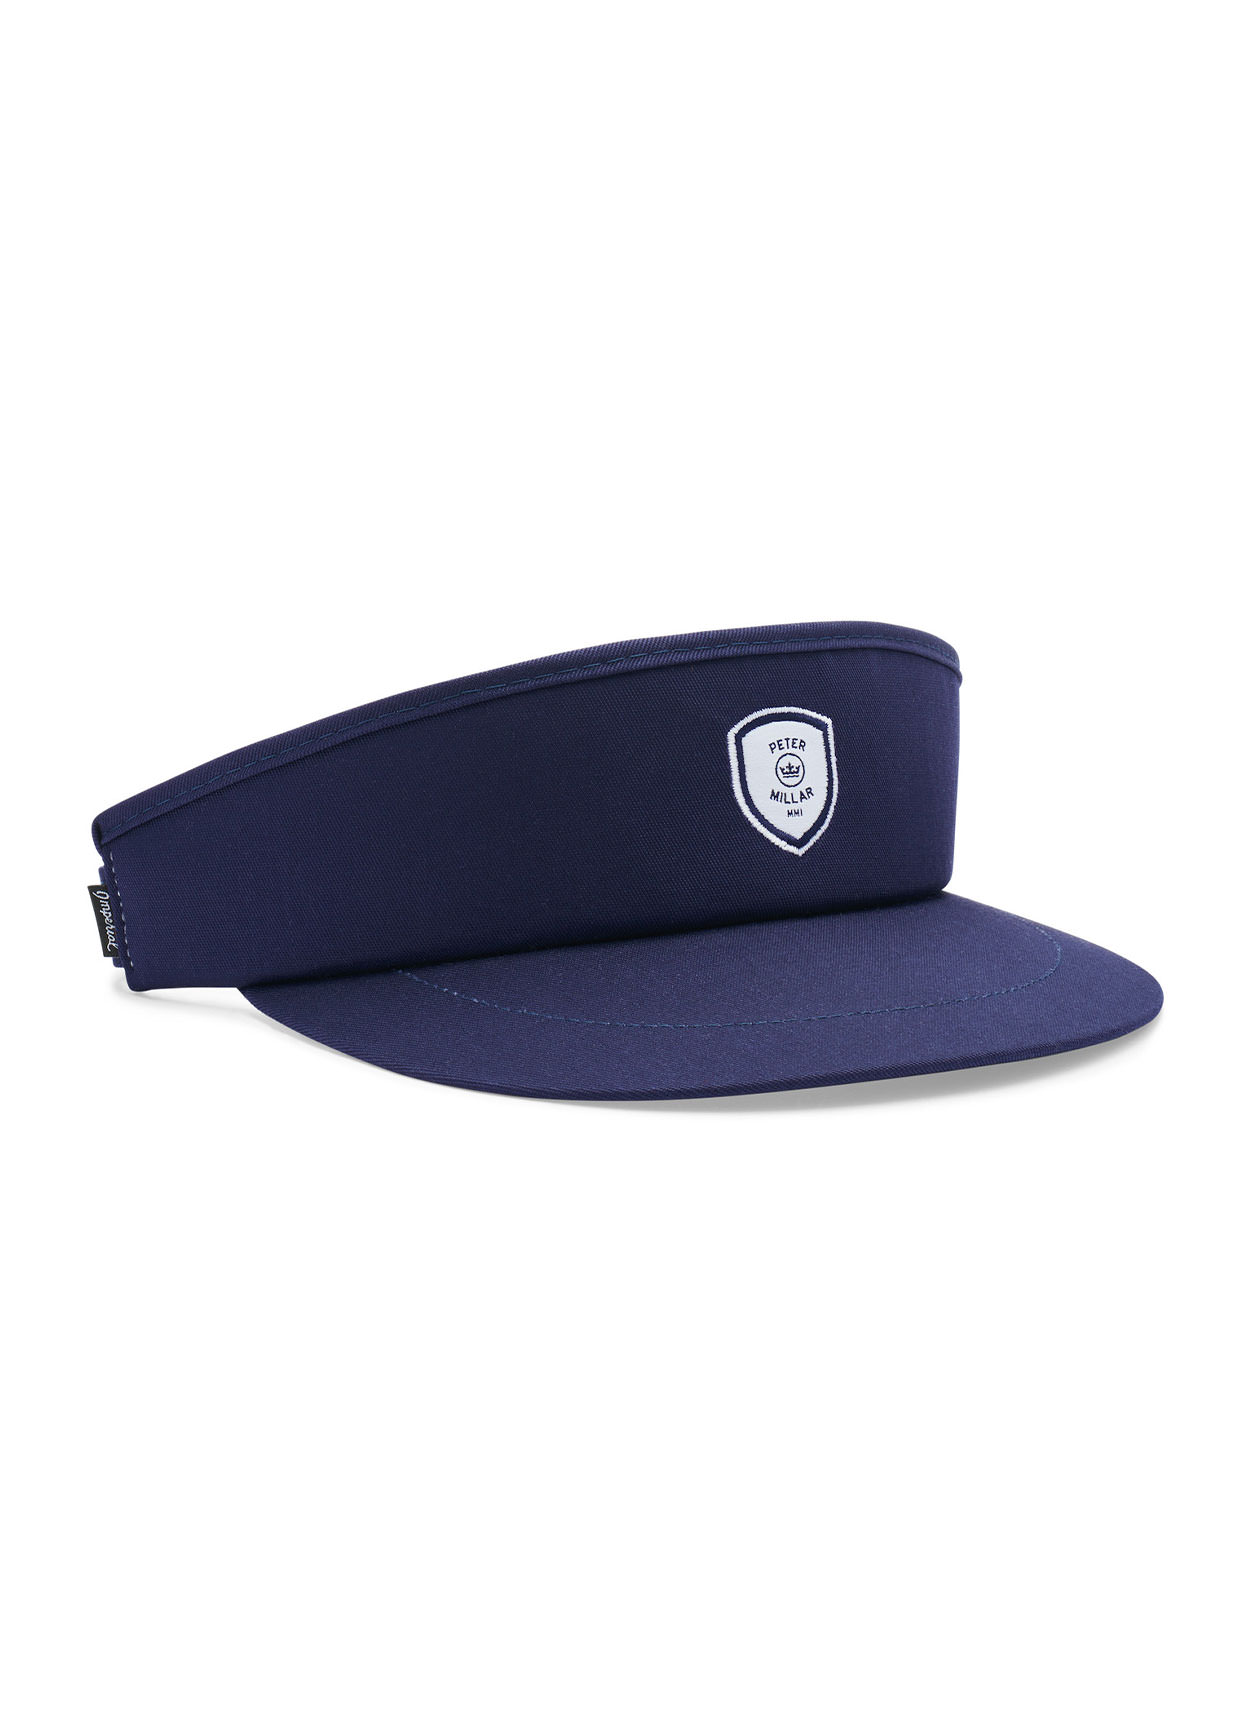 Peter Millar Navy Crown Crest Performance Hat